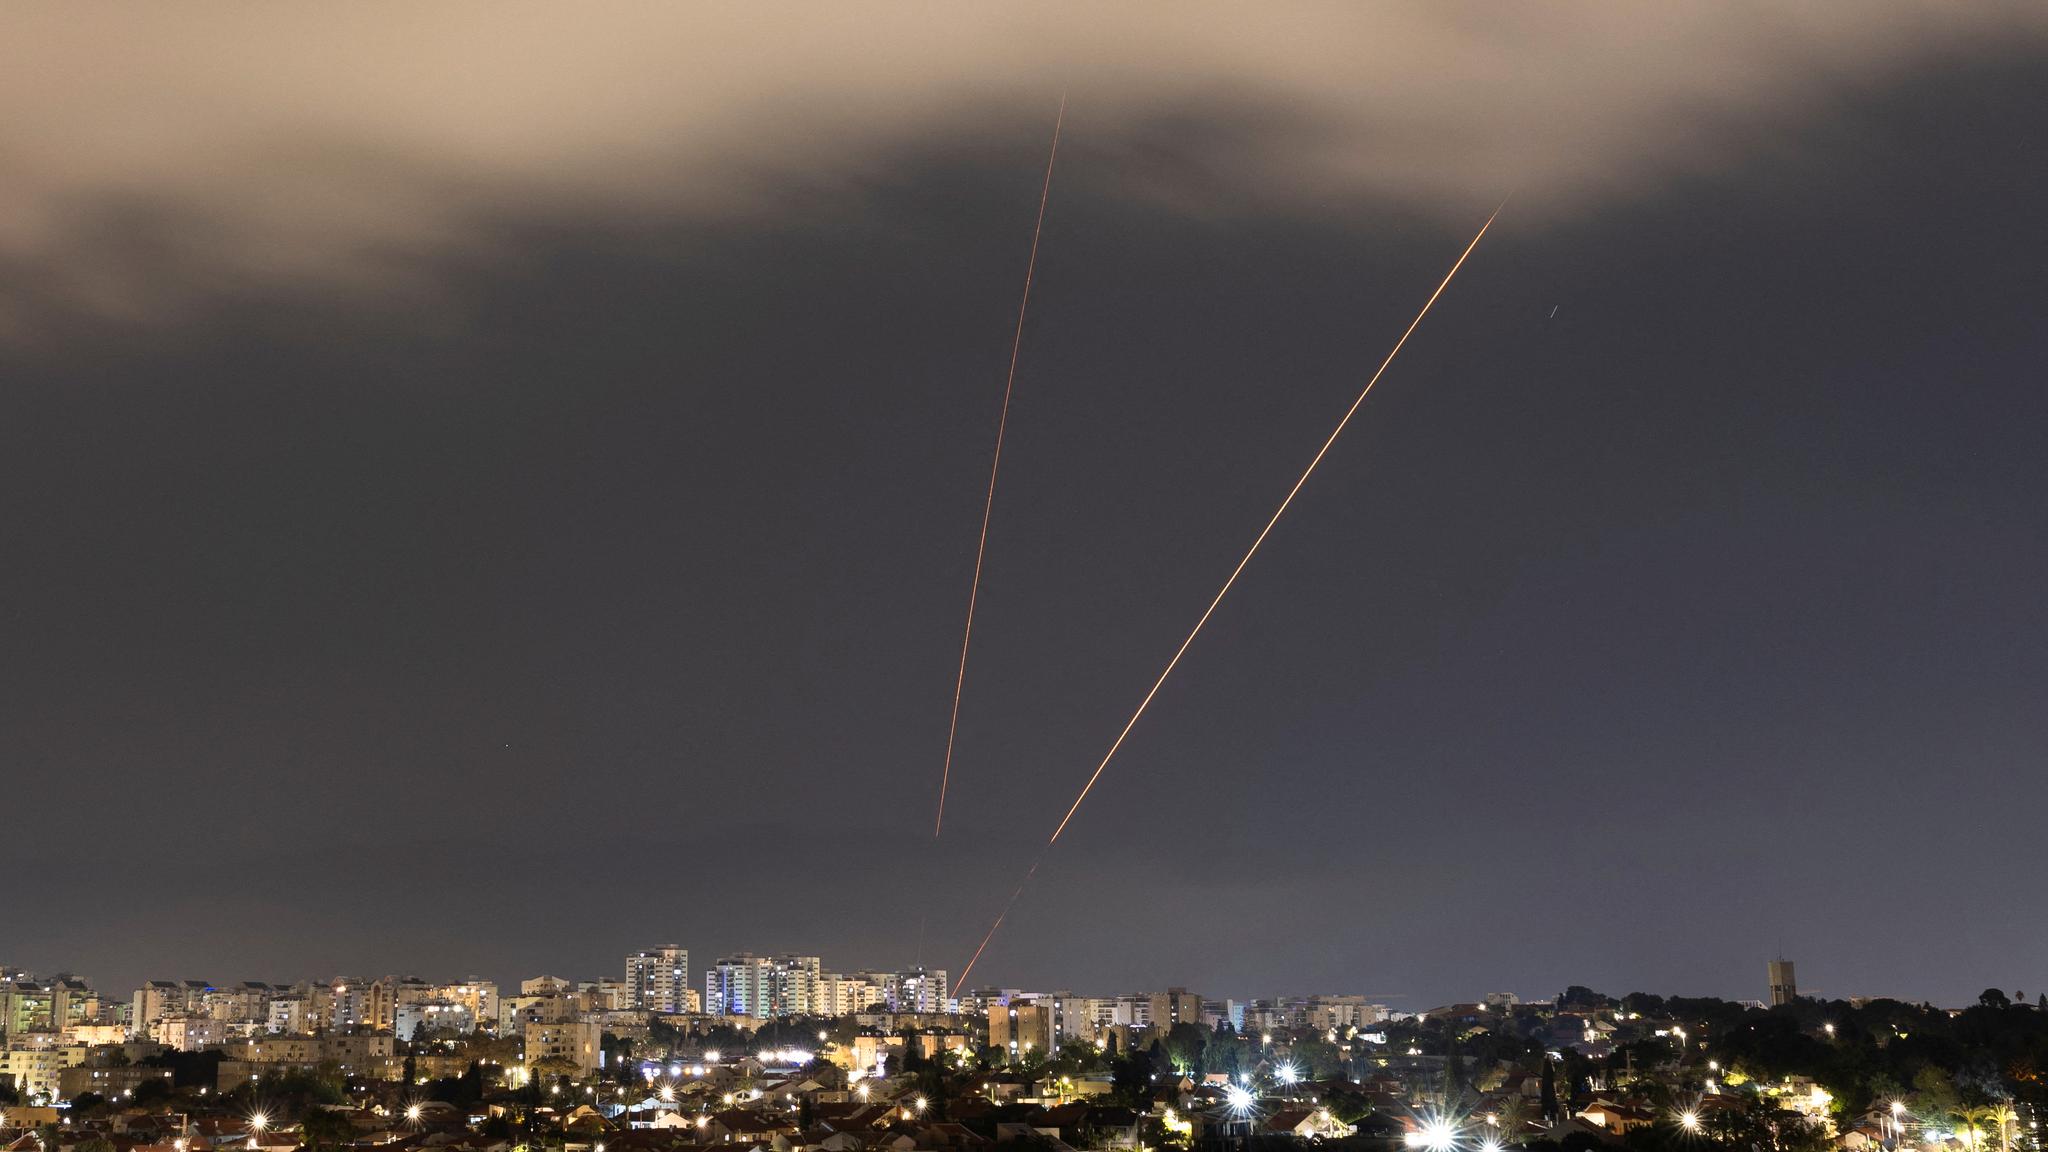 Israel utsatt for massivt angrep – varsler «betydelig respons»